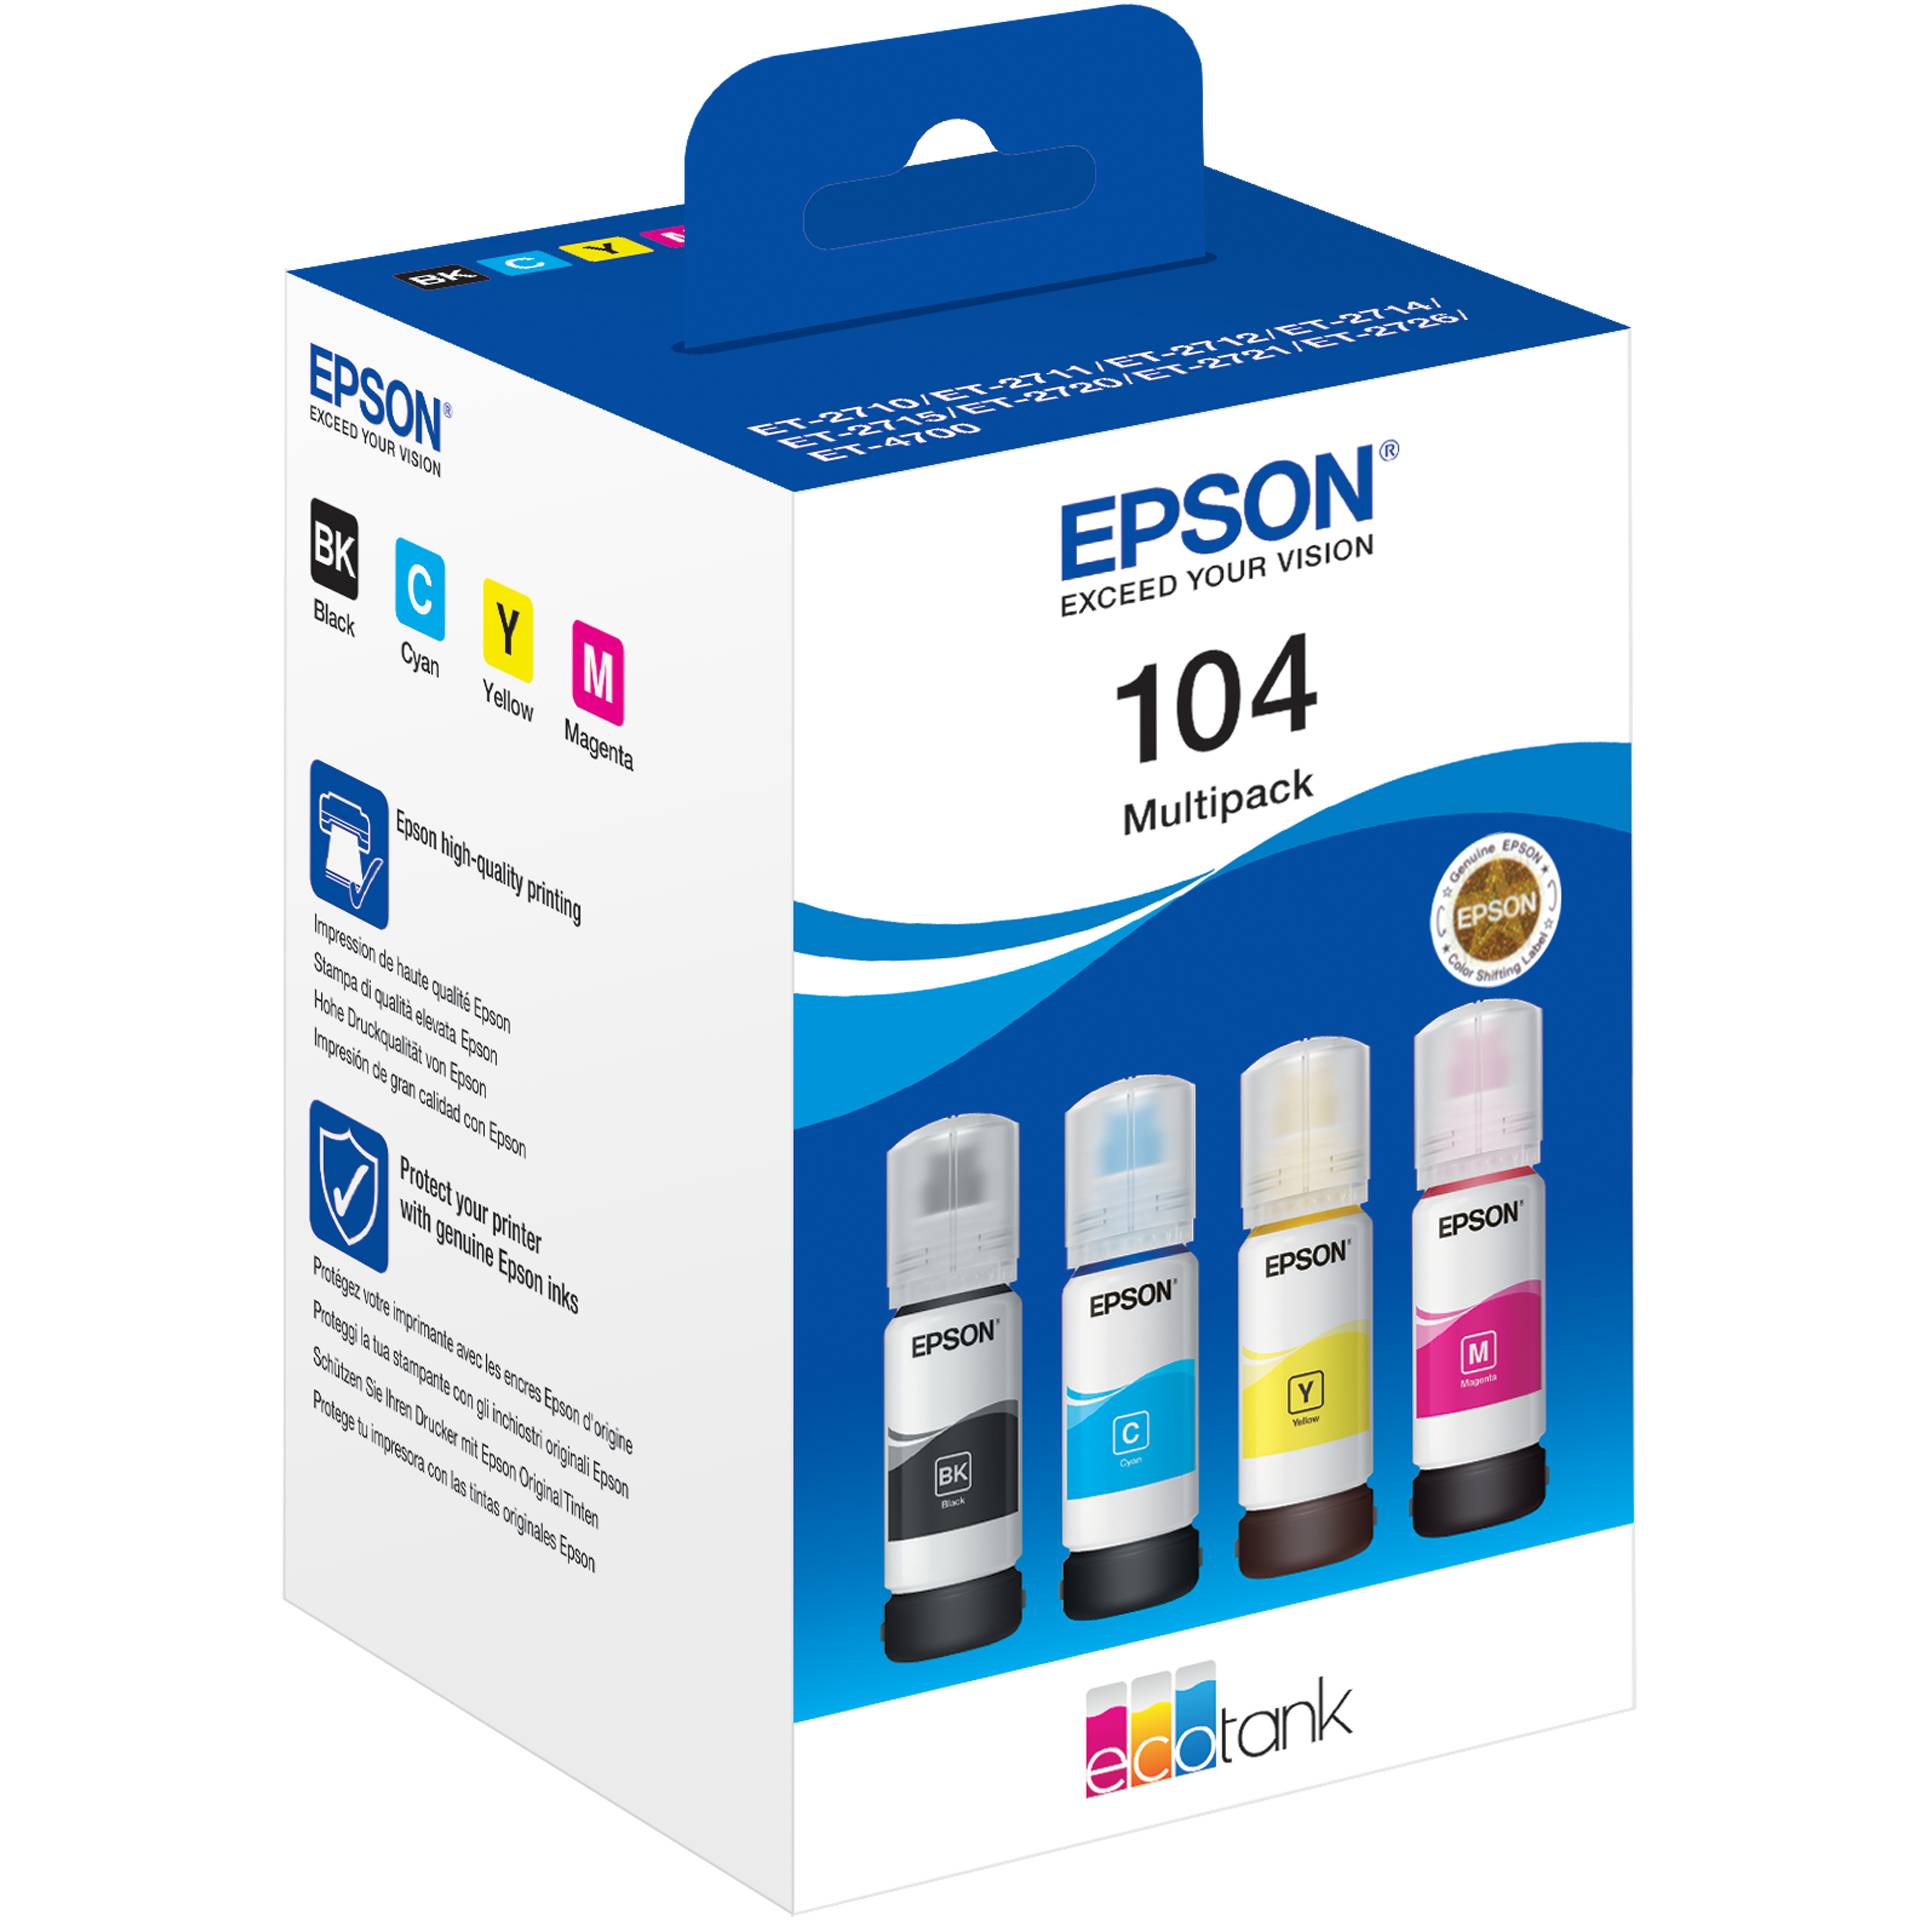 Epson EcoTank 4-colour Multipack T104